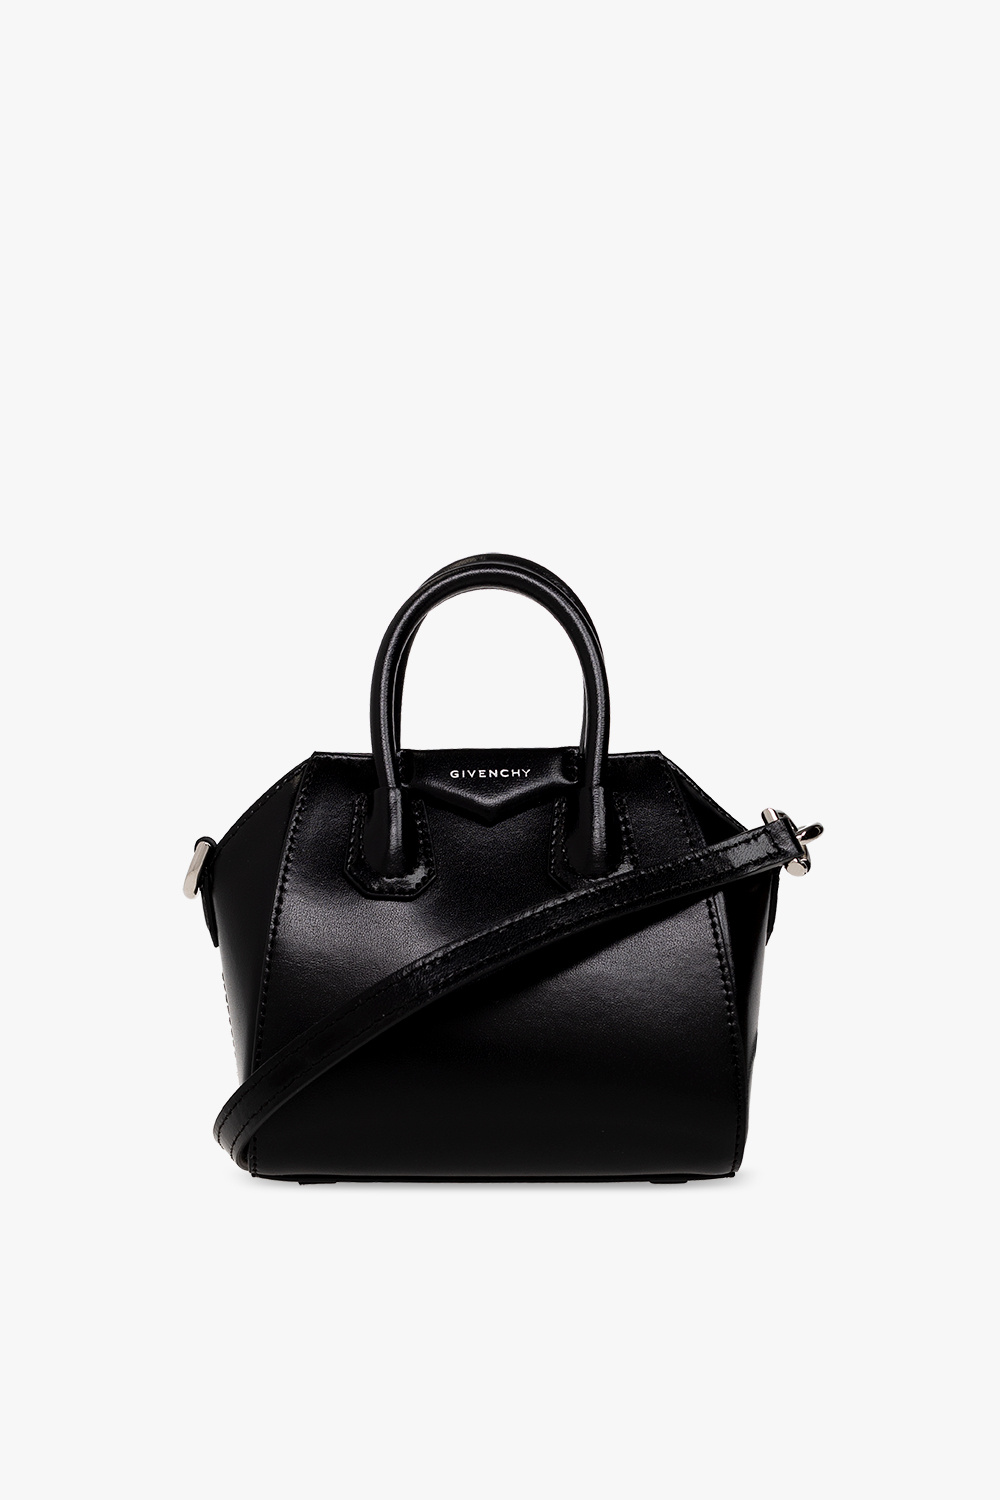 Givenchy ‘Antigona Micro’ shoulder bag